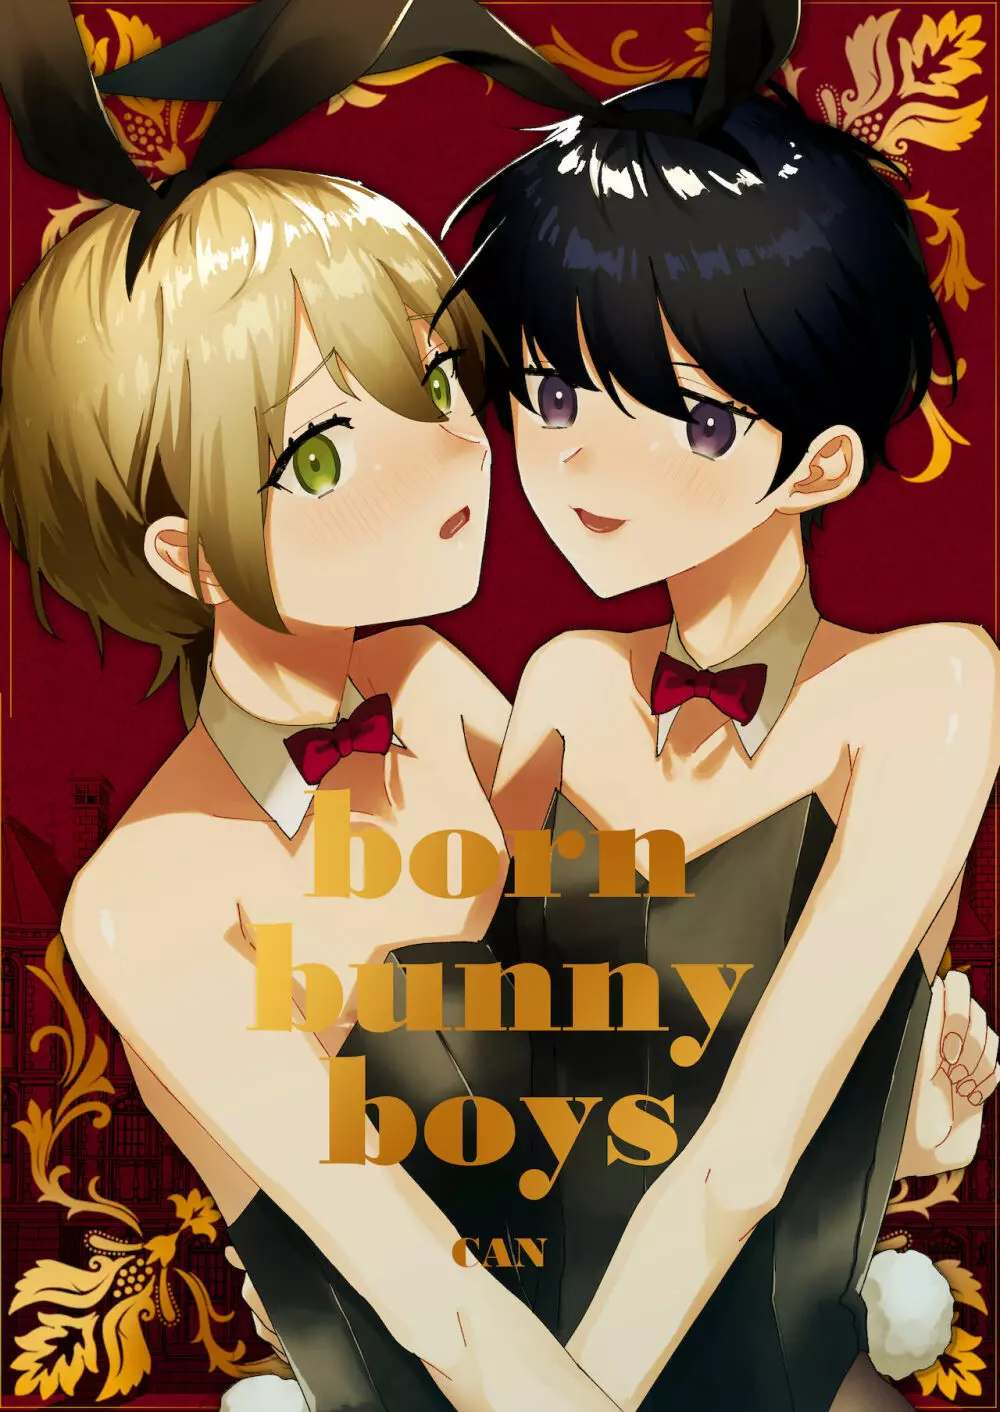 born bunny boys